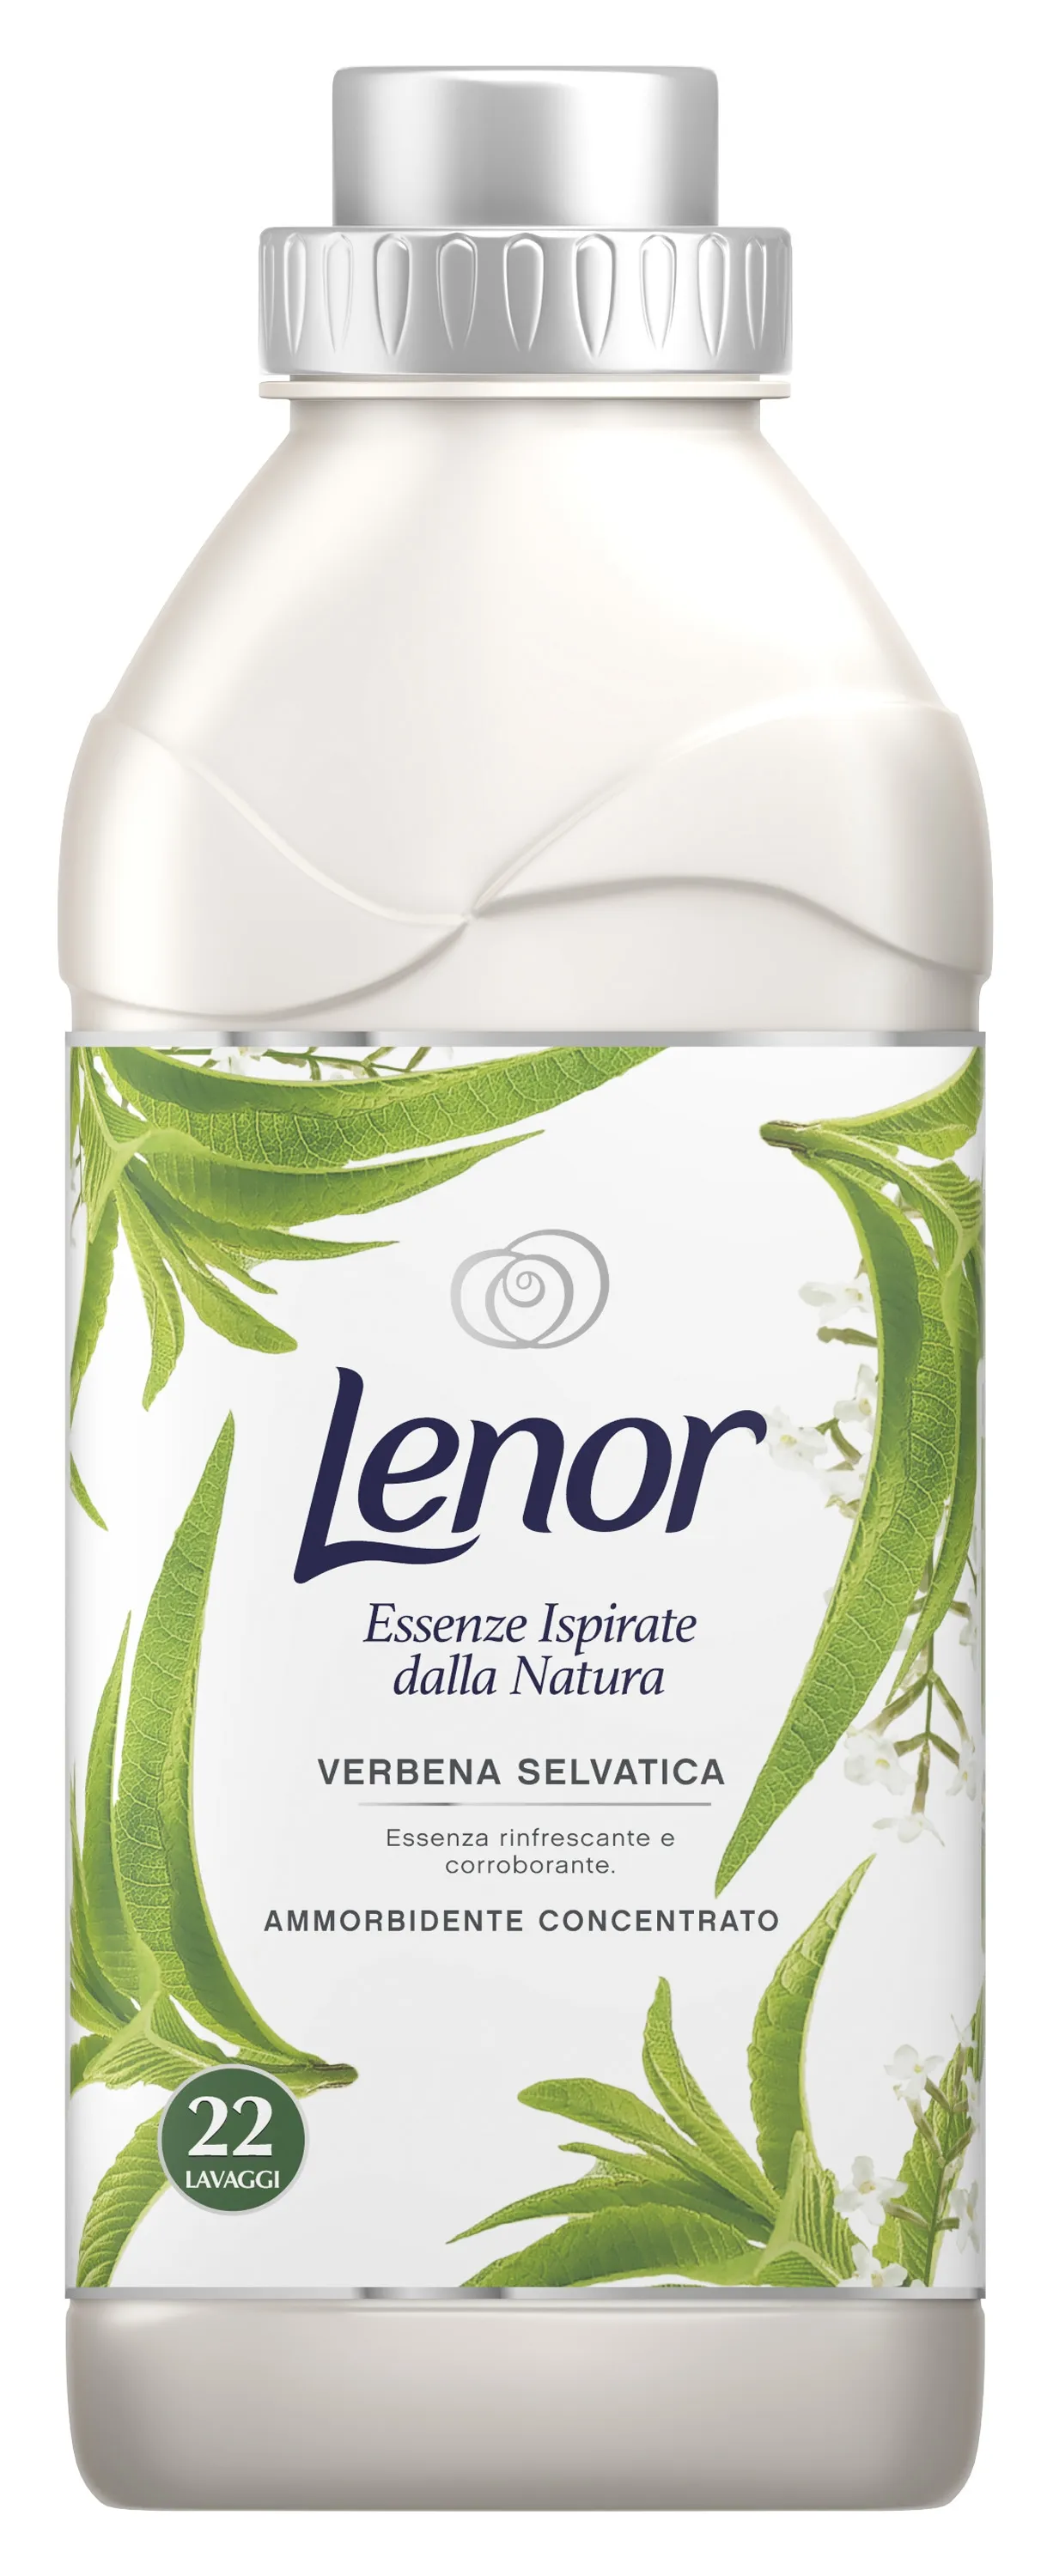 "LENOR Ammorbidente Concentrato Natural Verbena Selvatica Per bucato 550 ml"